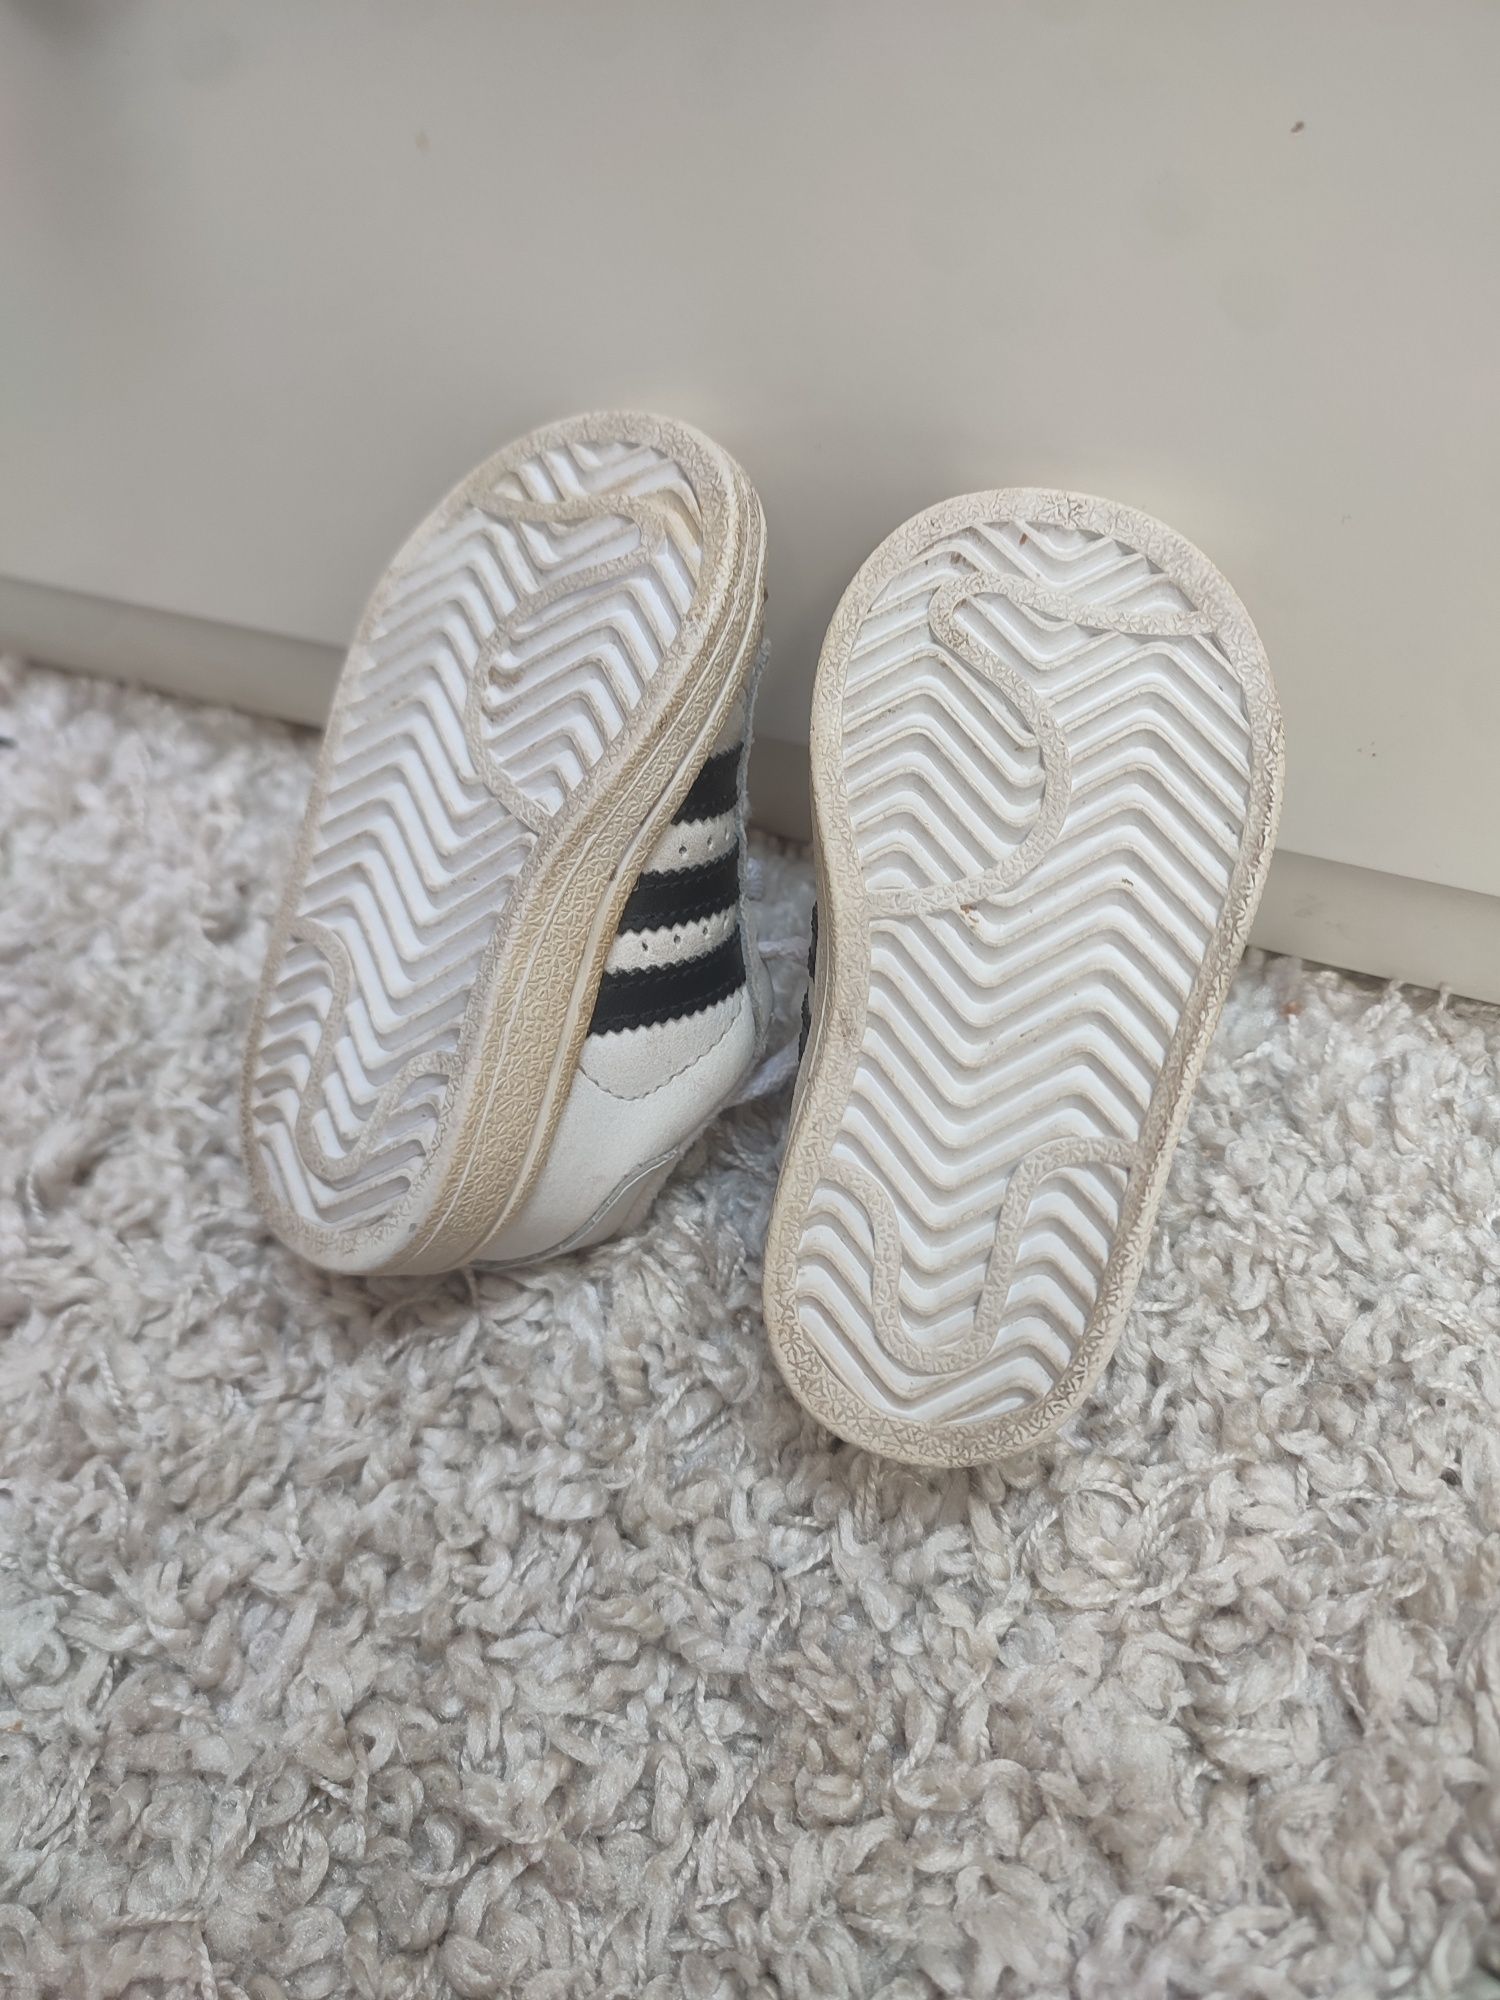 Adidas superstar retro malutkie białe rozmiar 19